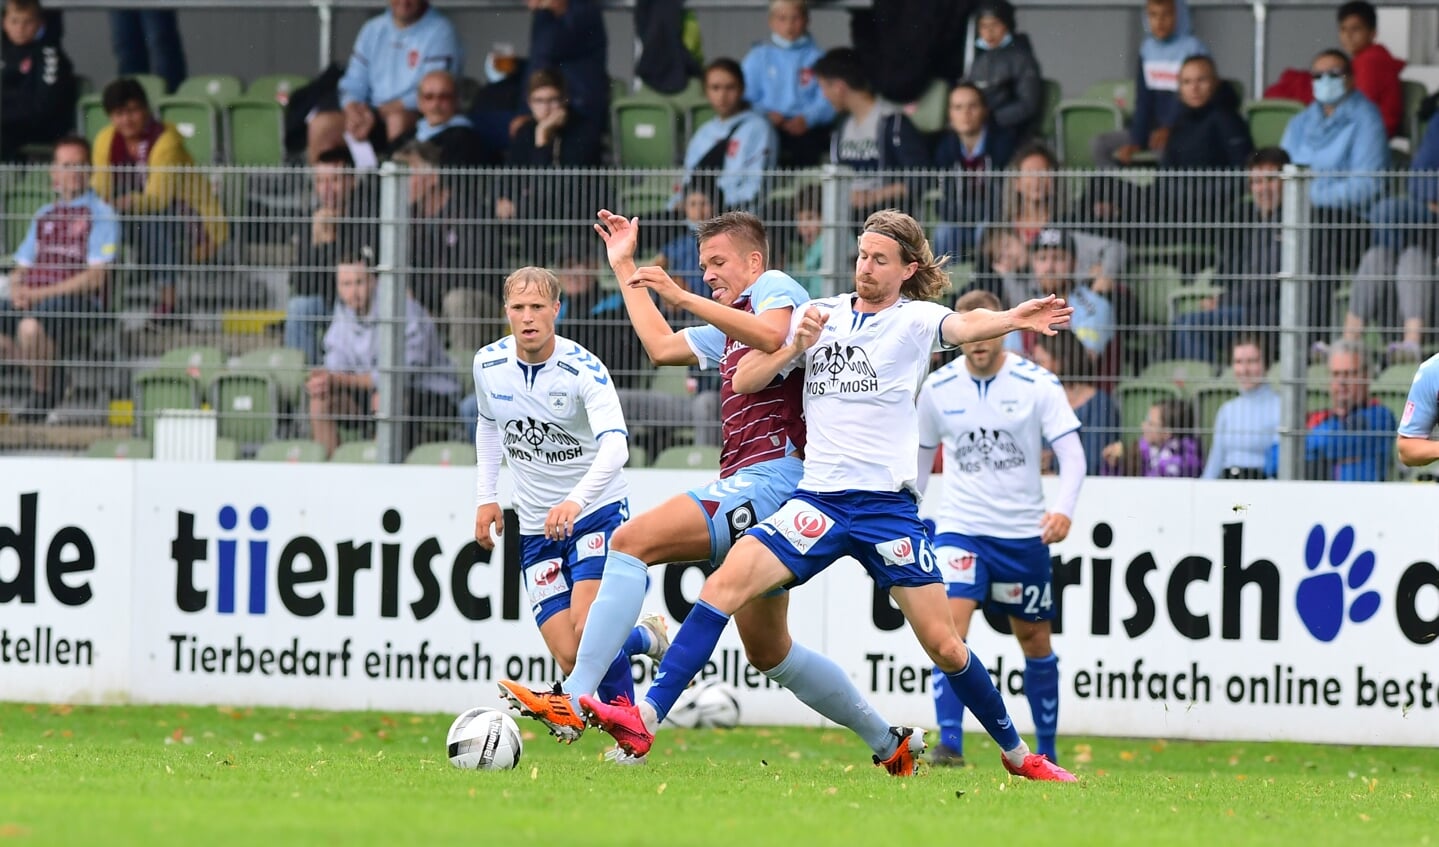 Es wurde um jeden Ball beim Duell zwischen dem SC Weiche Flensburg 08 und Kolding IF heiß gekämpft.